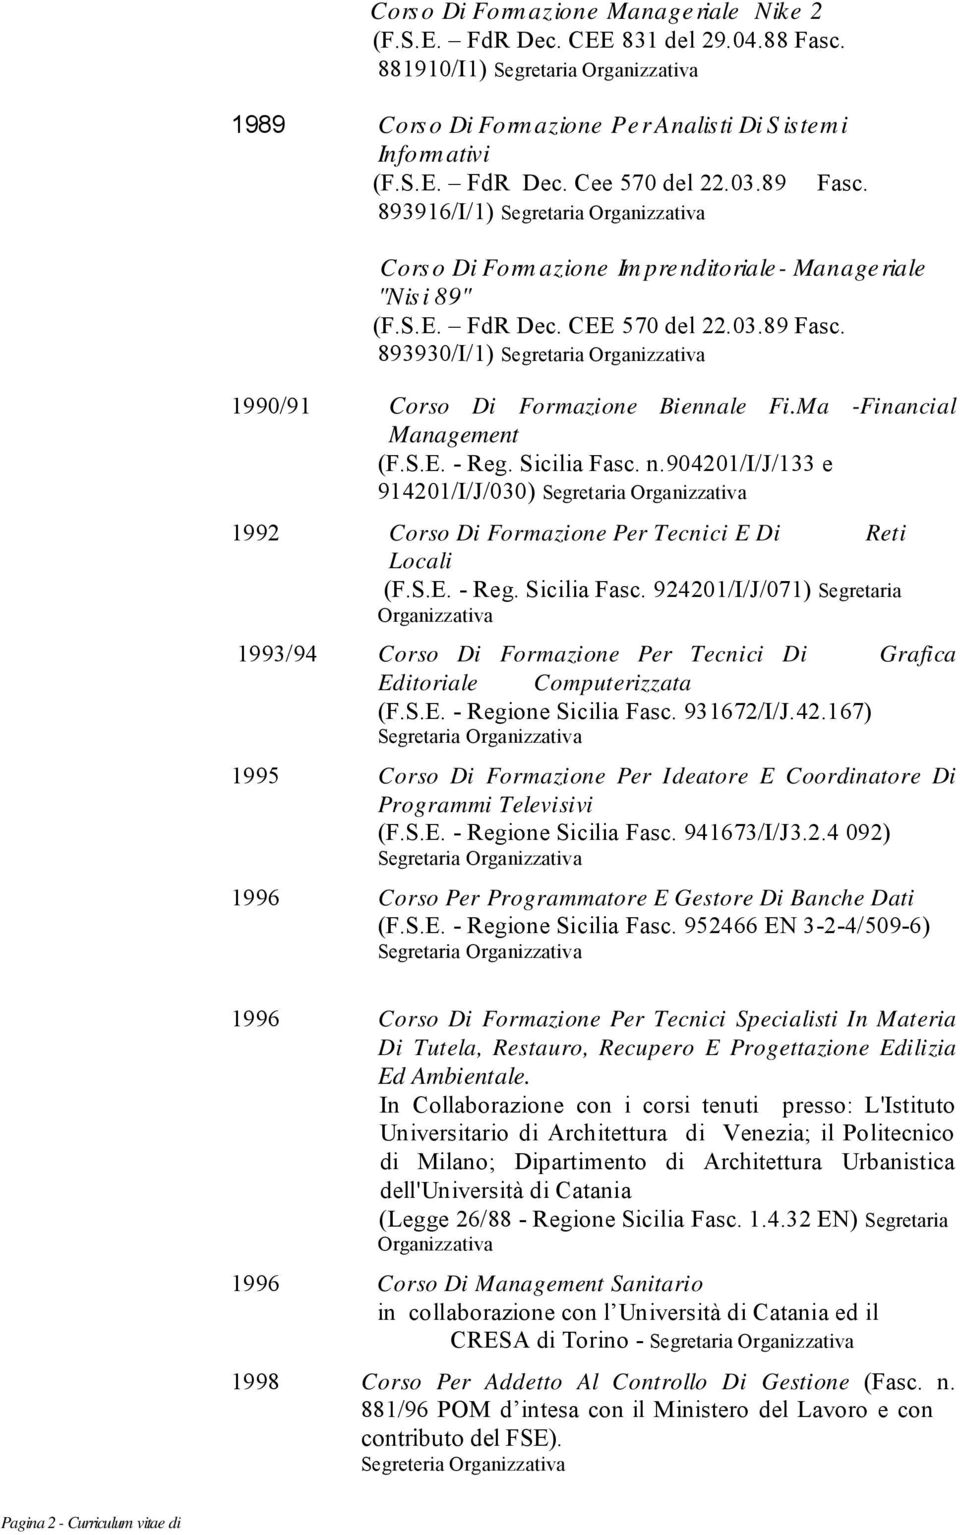 Ma -Financial Management (F.S.E. - Reg. Sicilia Fasc. n.904201/i/j/133 e 914201/I/J/030) Corso Di Formazione Per Tecnici E Di Reti Locali (F.S.E. - Reg. Sicilia Fasc. 924201/I/J/071) Segretaria Corso Di Formazione Per Tecnici Di Editoriale Computerizzata (F.